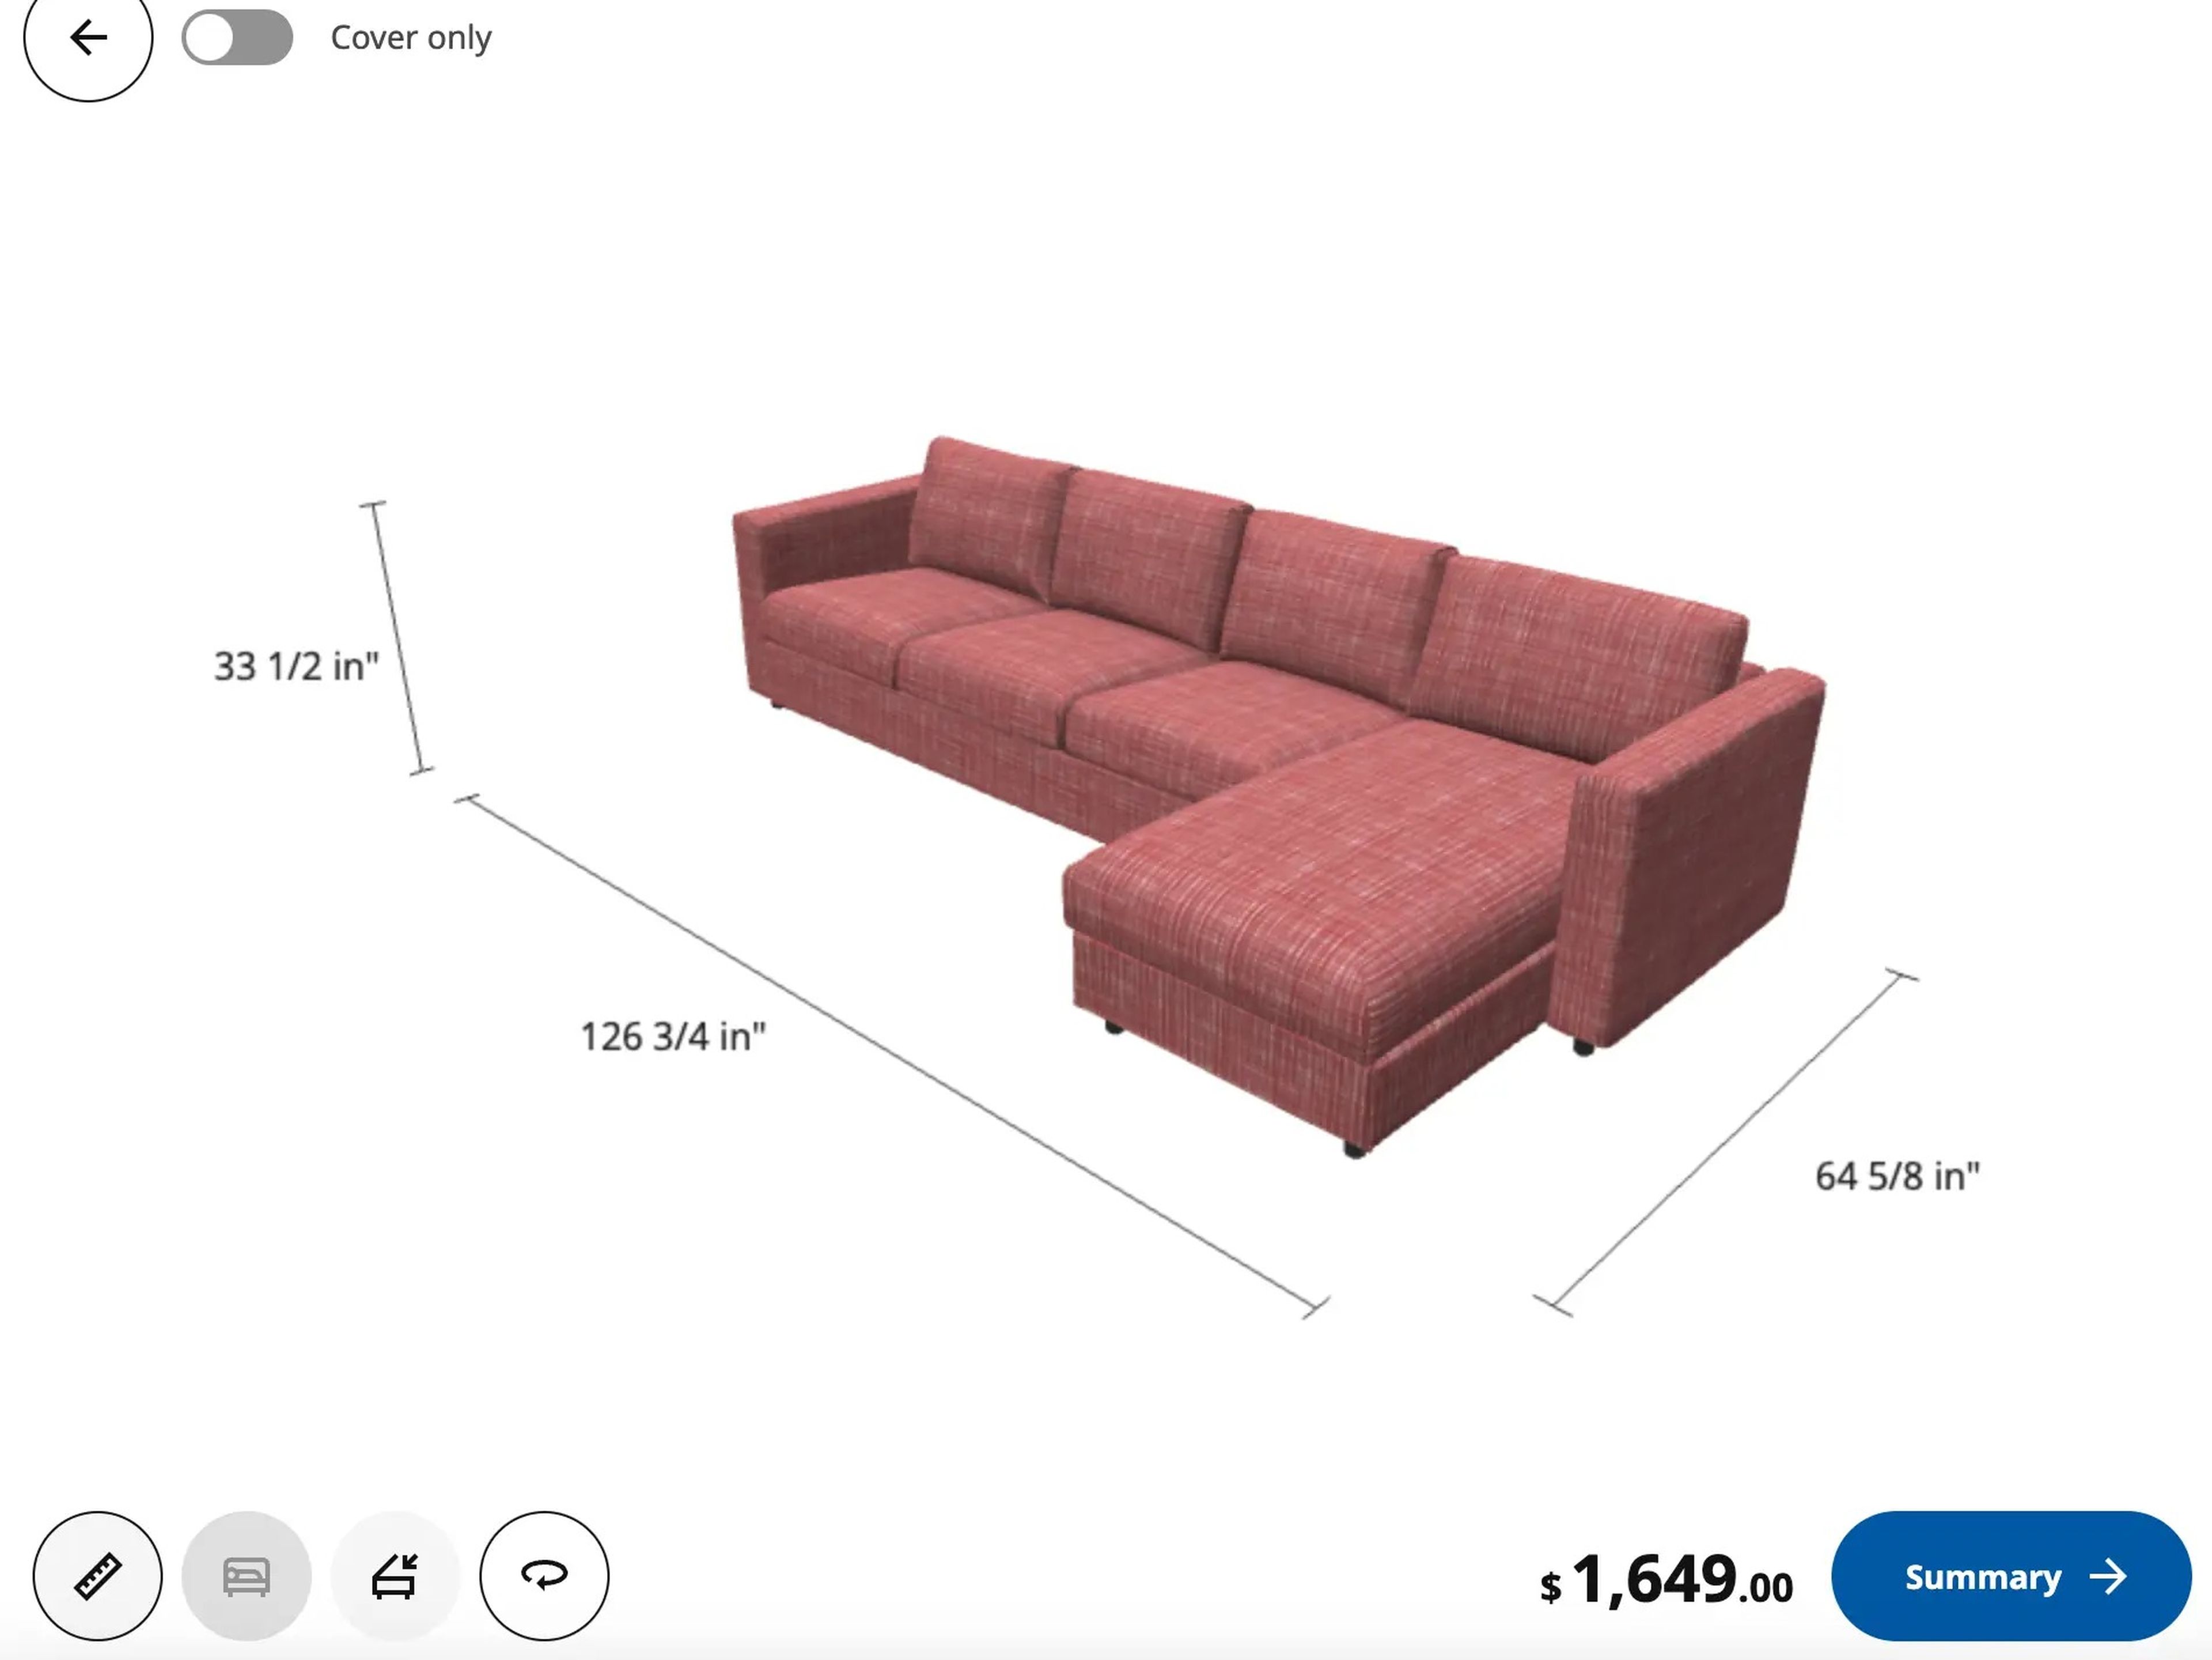 Los clientes pueden elegir qué elementos prefieren en sus sofás a medida.